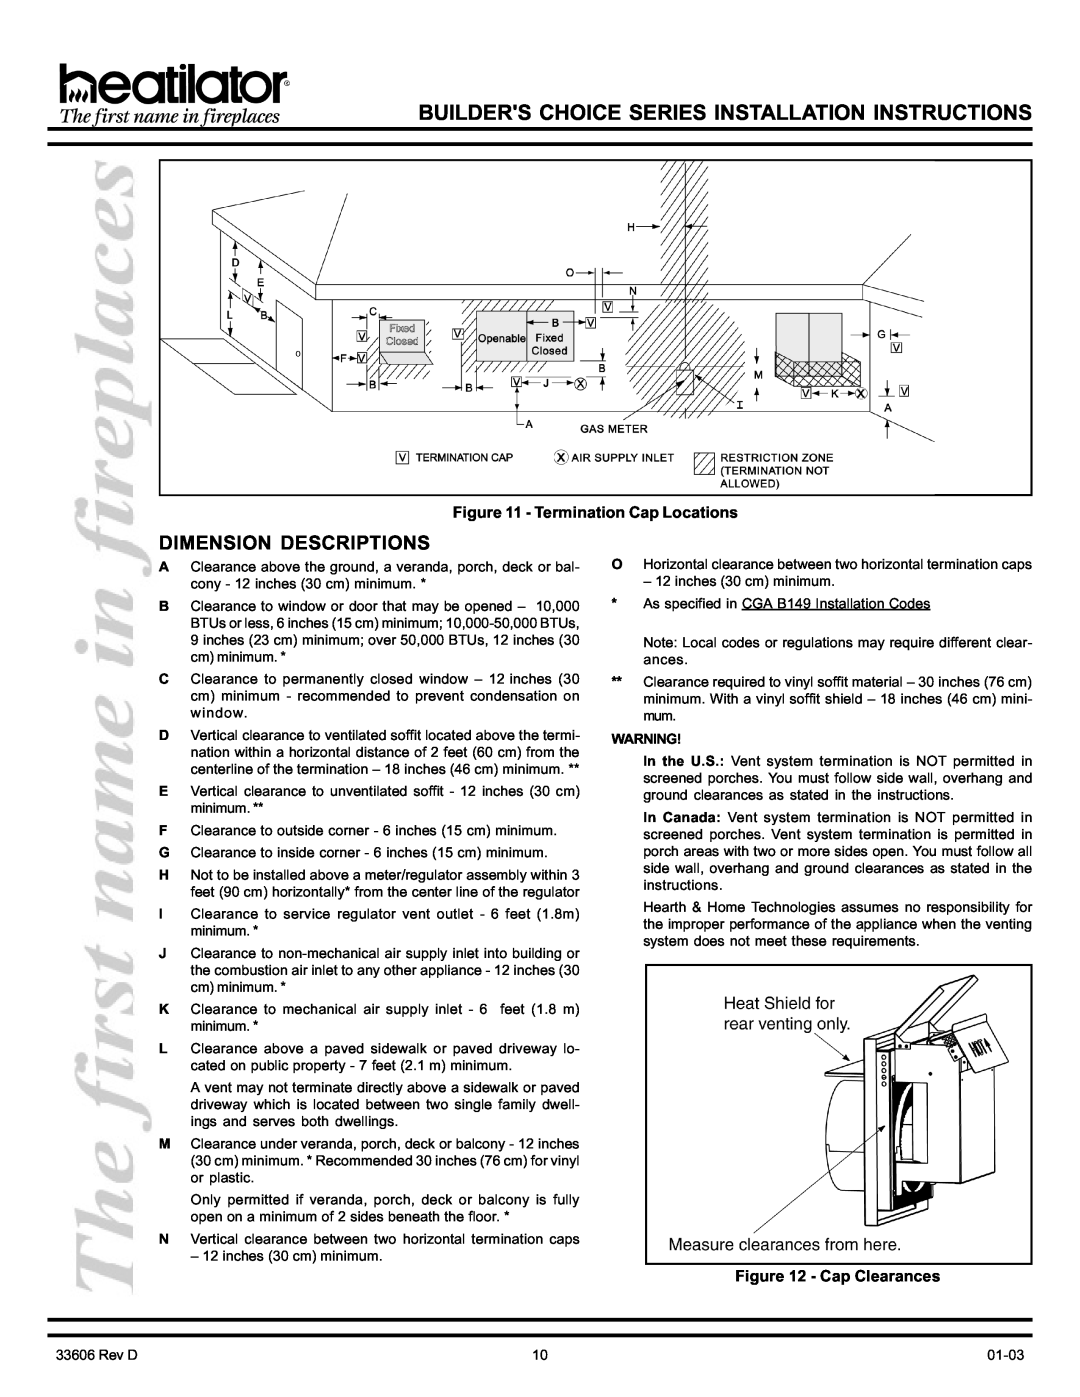 Heatiator BCDV36 manual Dimension Descriptions, Termination Cap Locations, Cap Clearances 